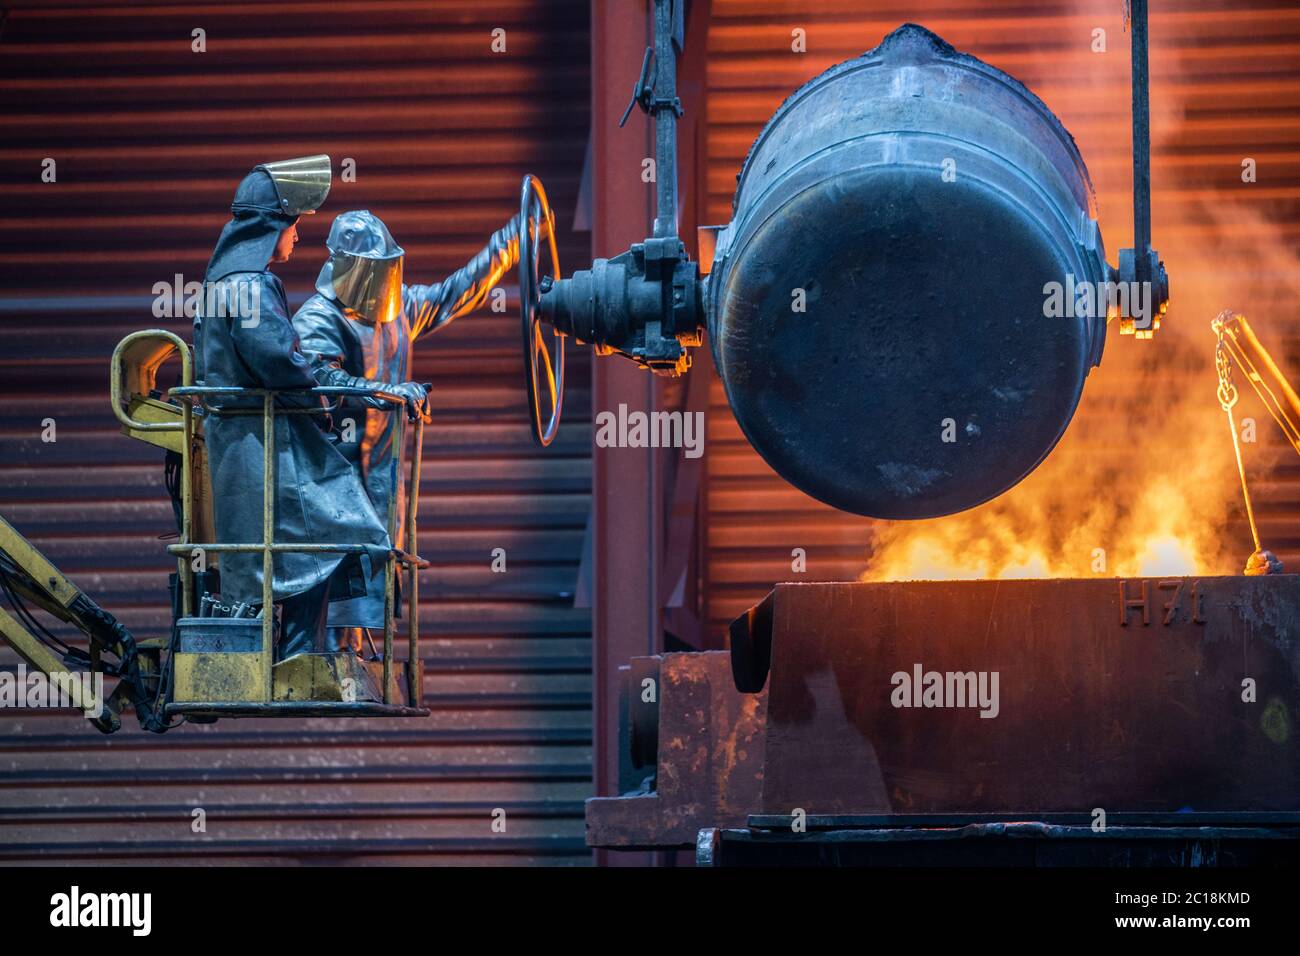 Torgelow, Alemania. 5 de junio de 2020. Los trabajadores vierten hierro  líquido a una temperatura de 1,400 grados en la fundición de hierro en  moldes preparados. Las piezas metálicas de hasta 110